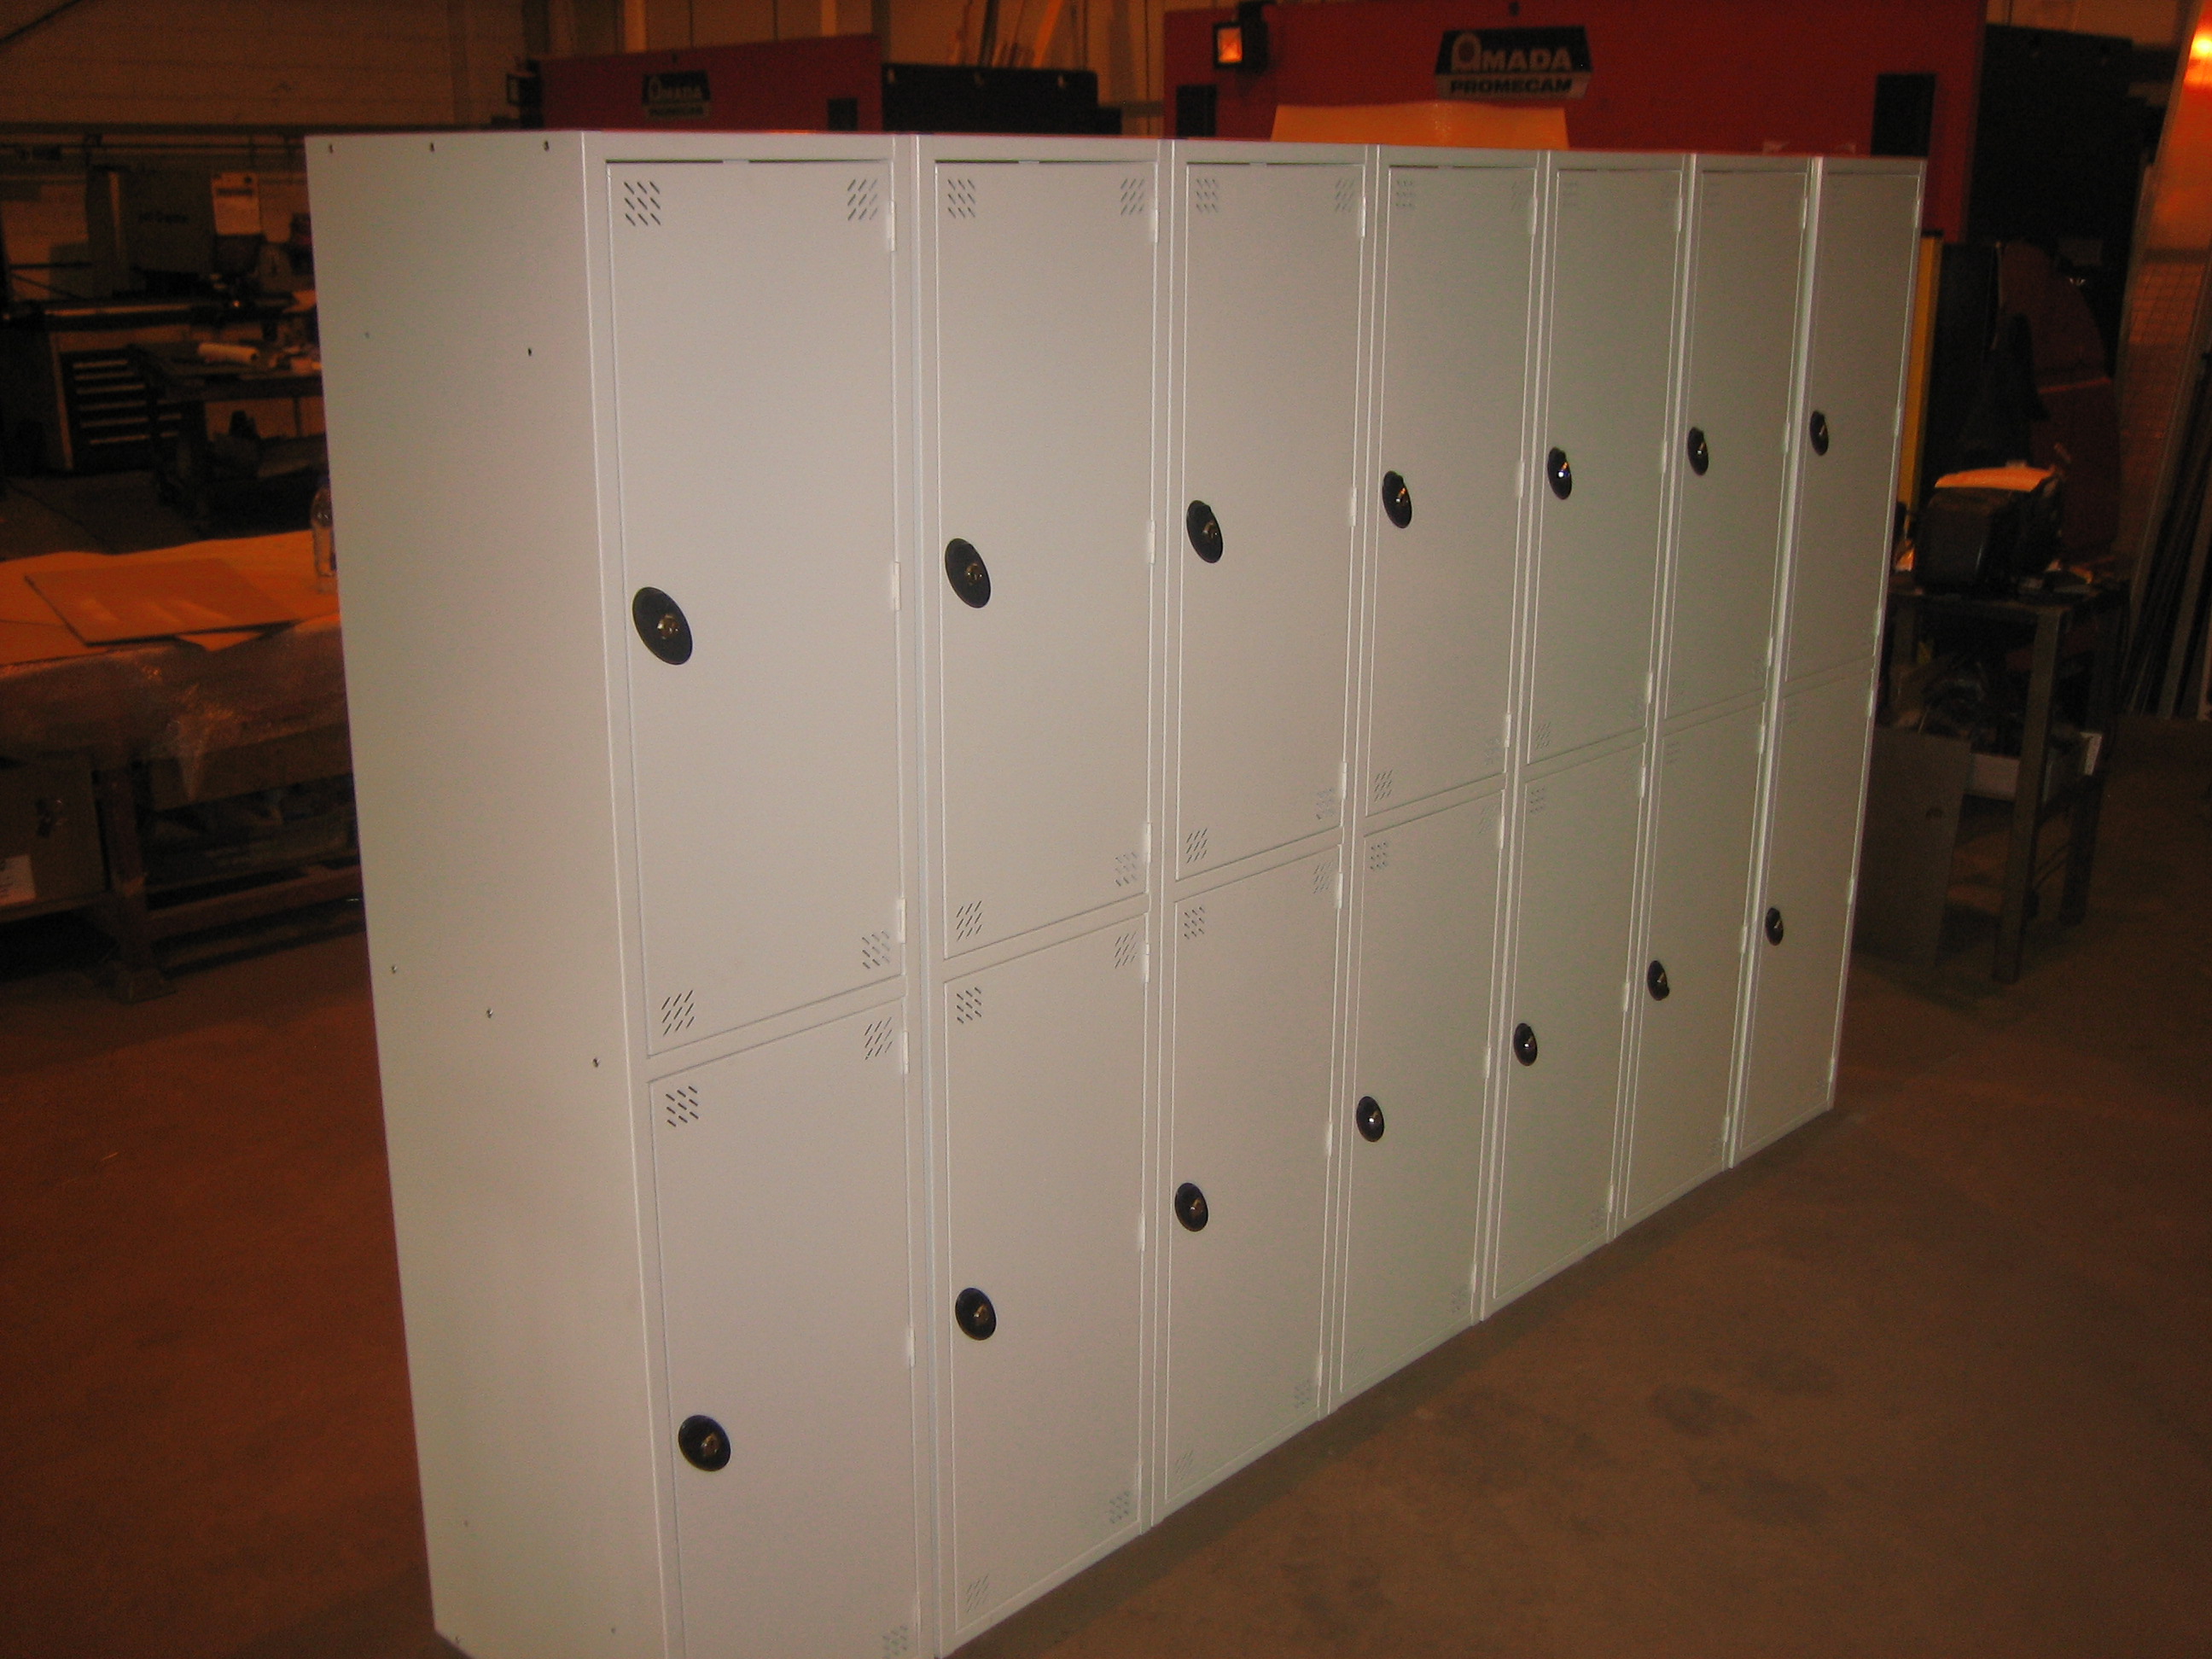 Sheet metal fabrication lockers